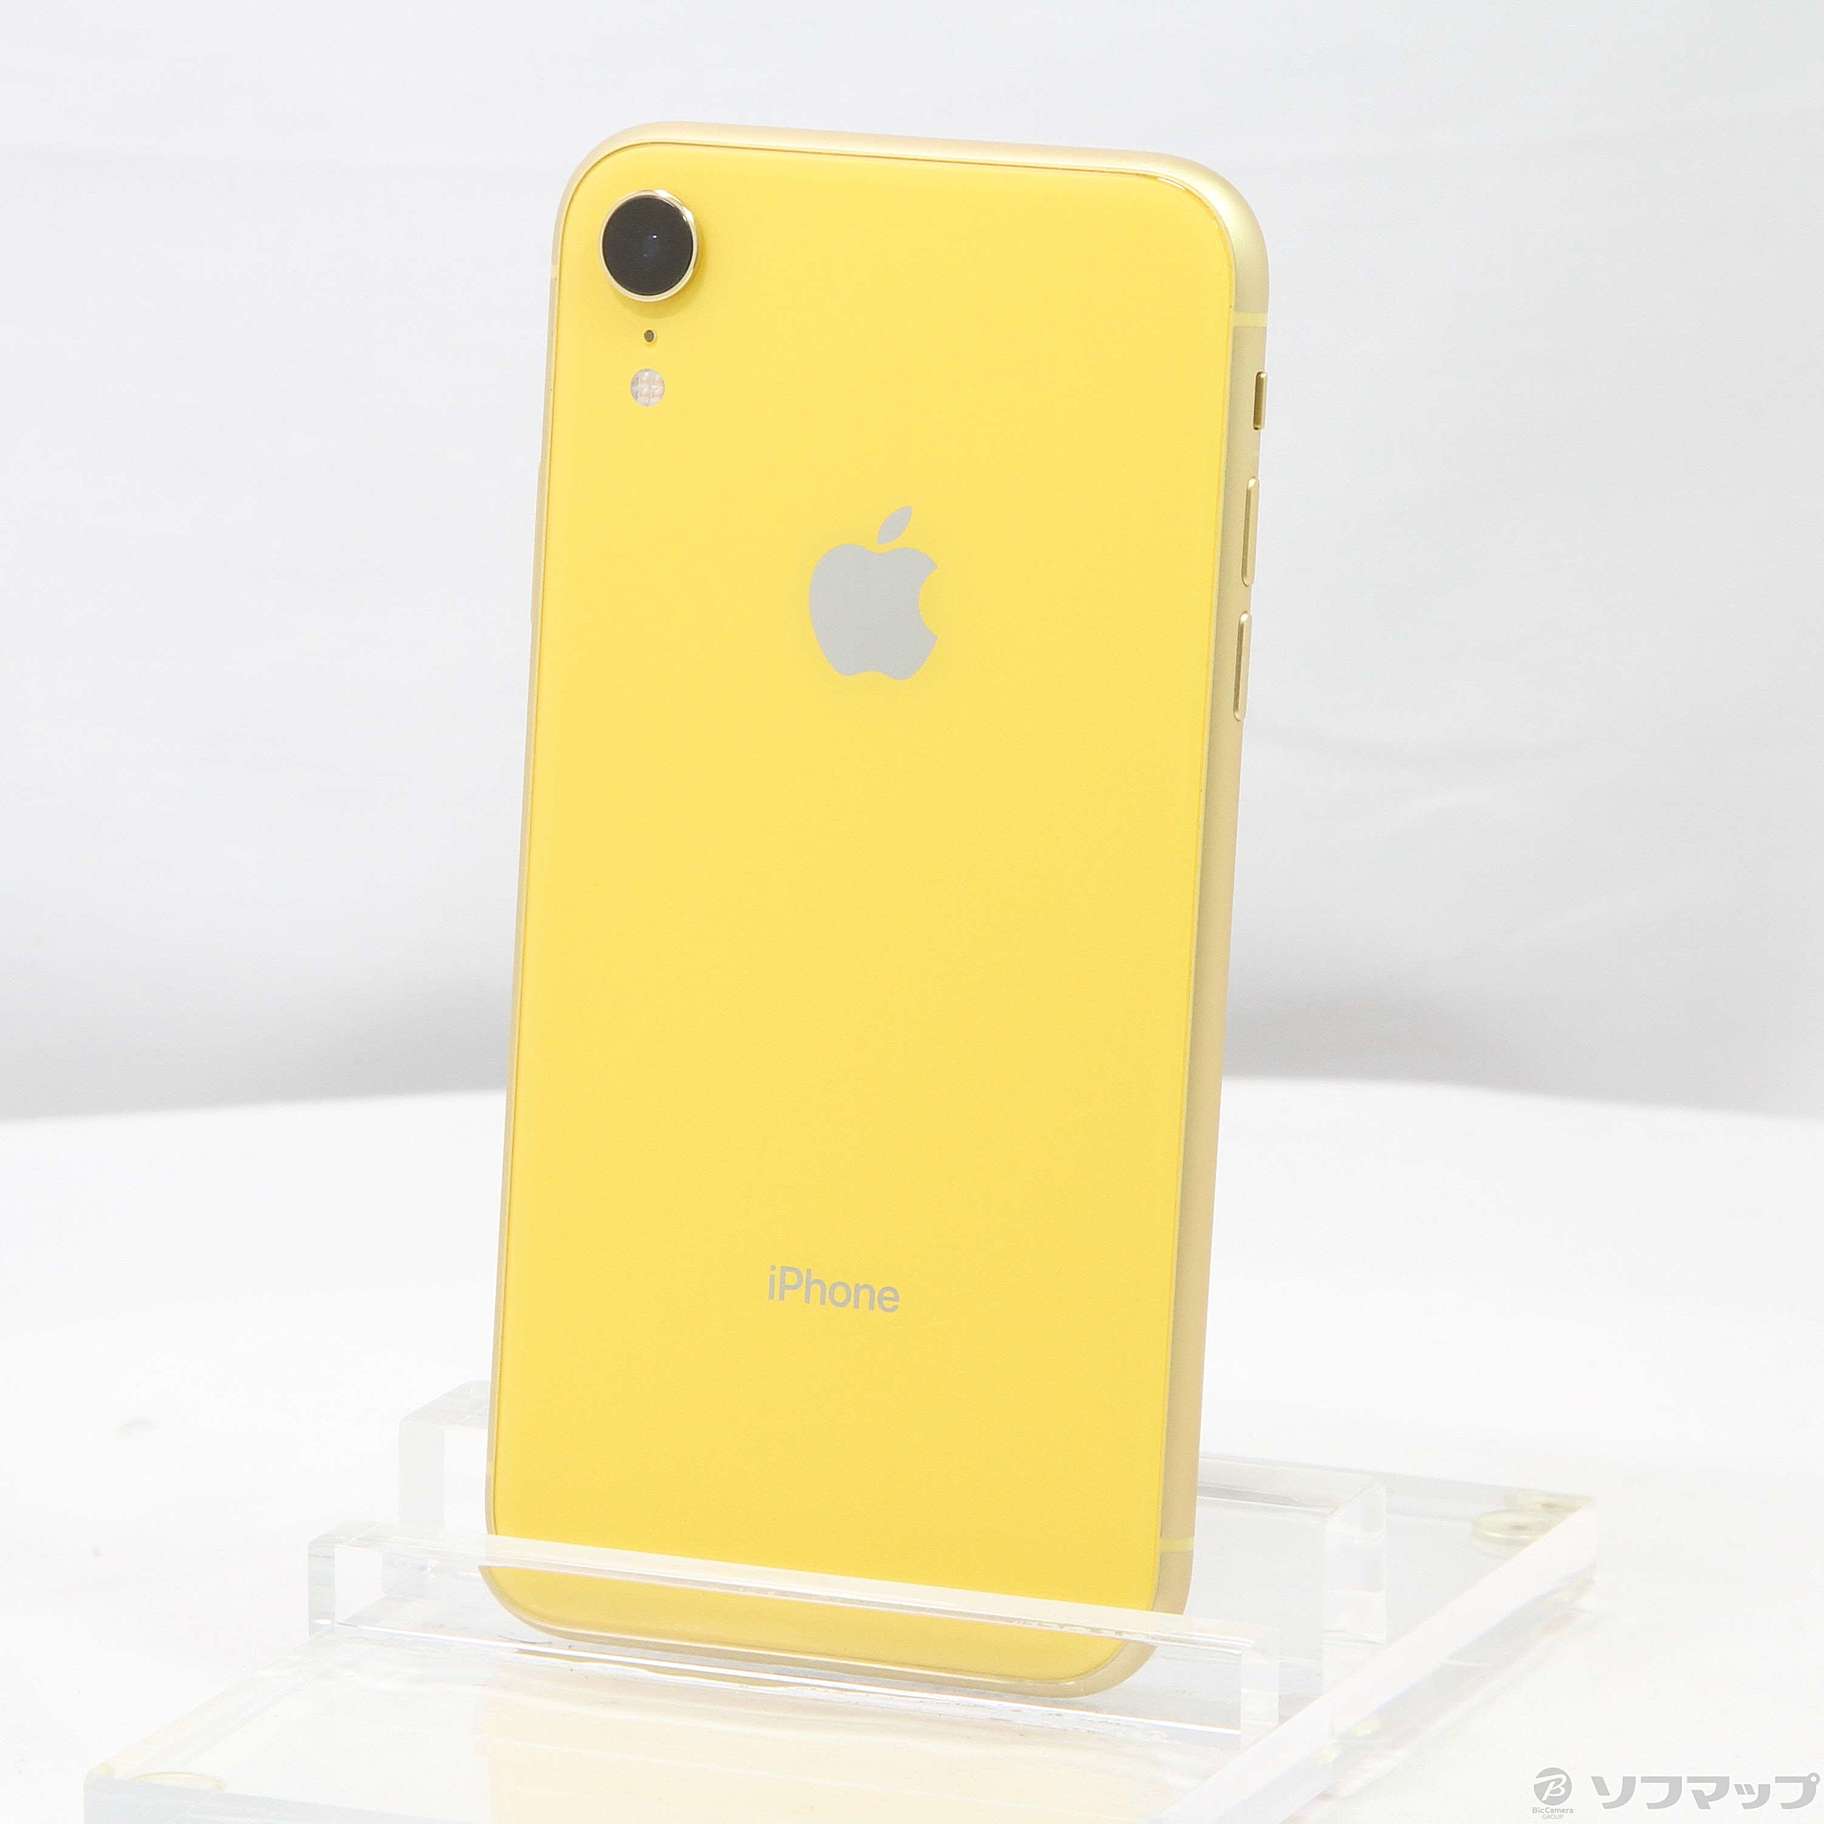 iPhone XR Yellow 64 GB SIMフリー